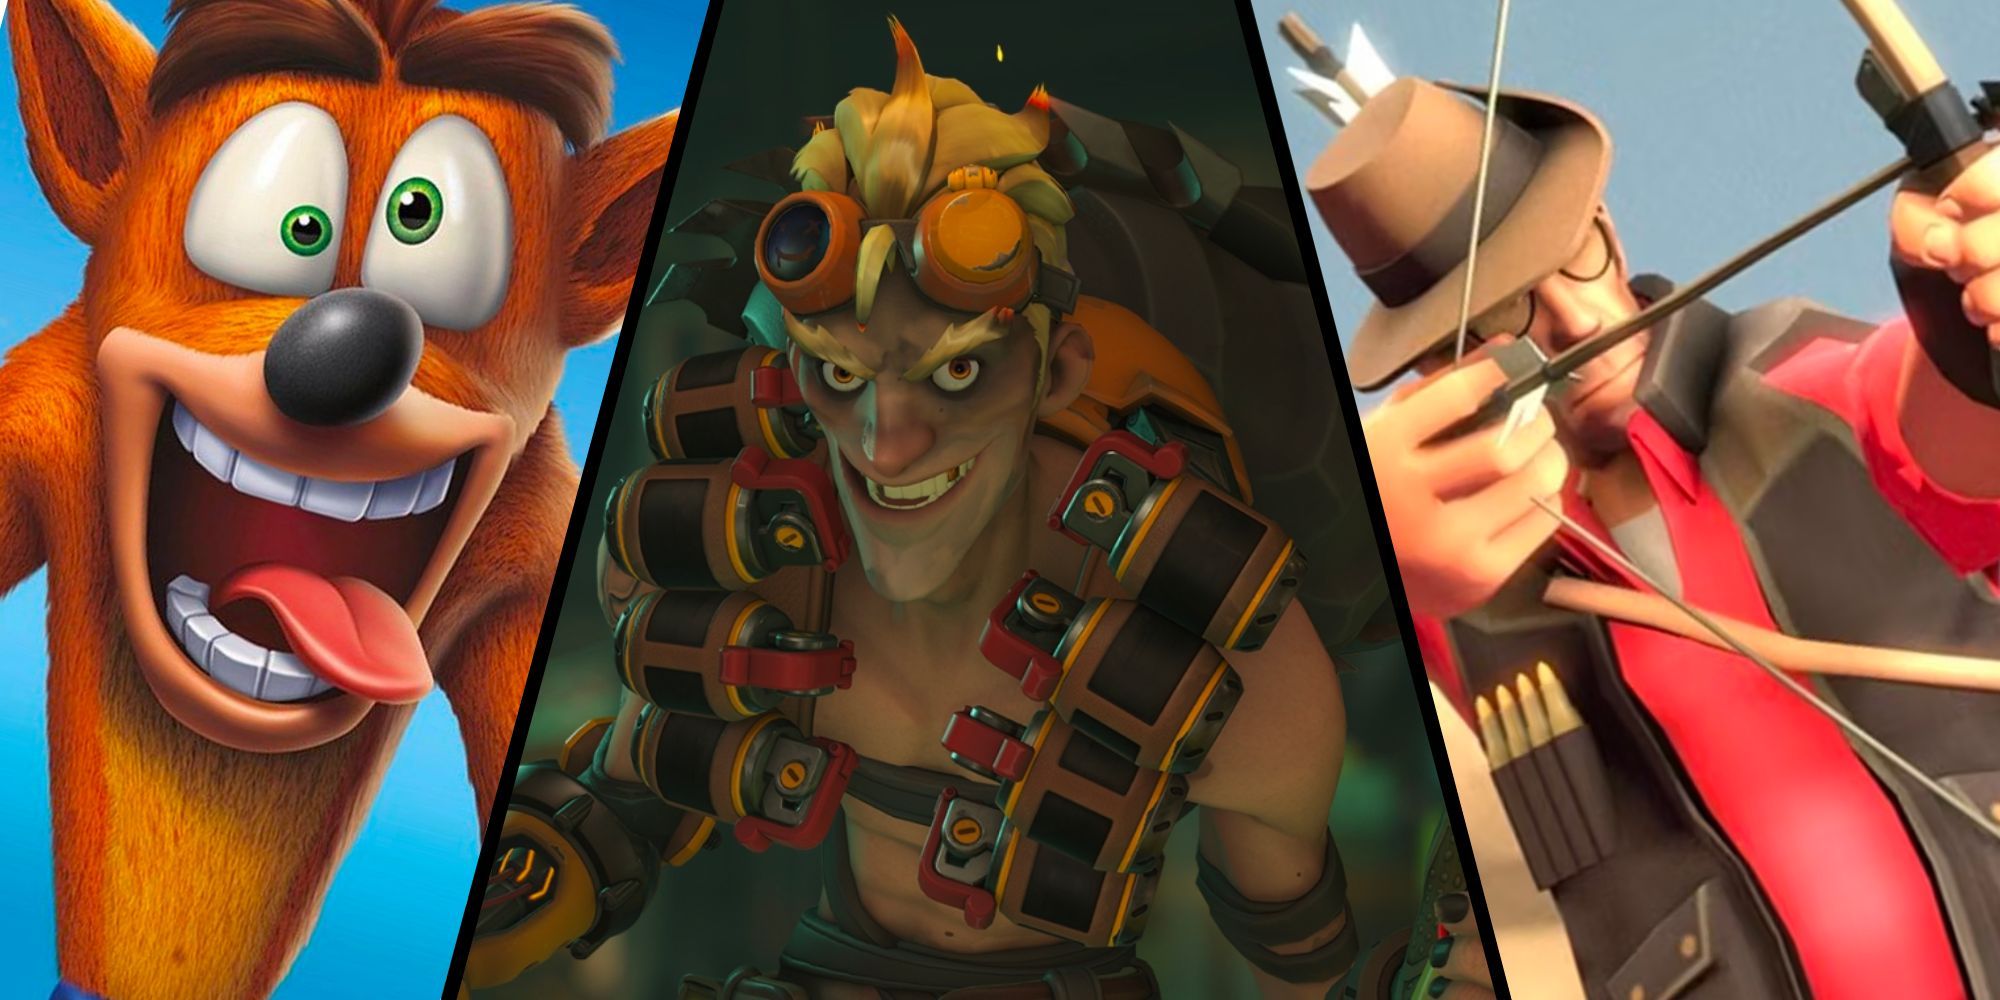 Crash Bandicoot, Junkrat, Sniper in a Split Image Collage